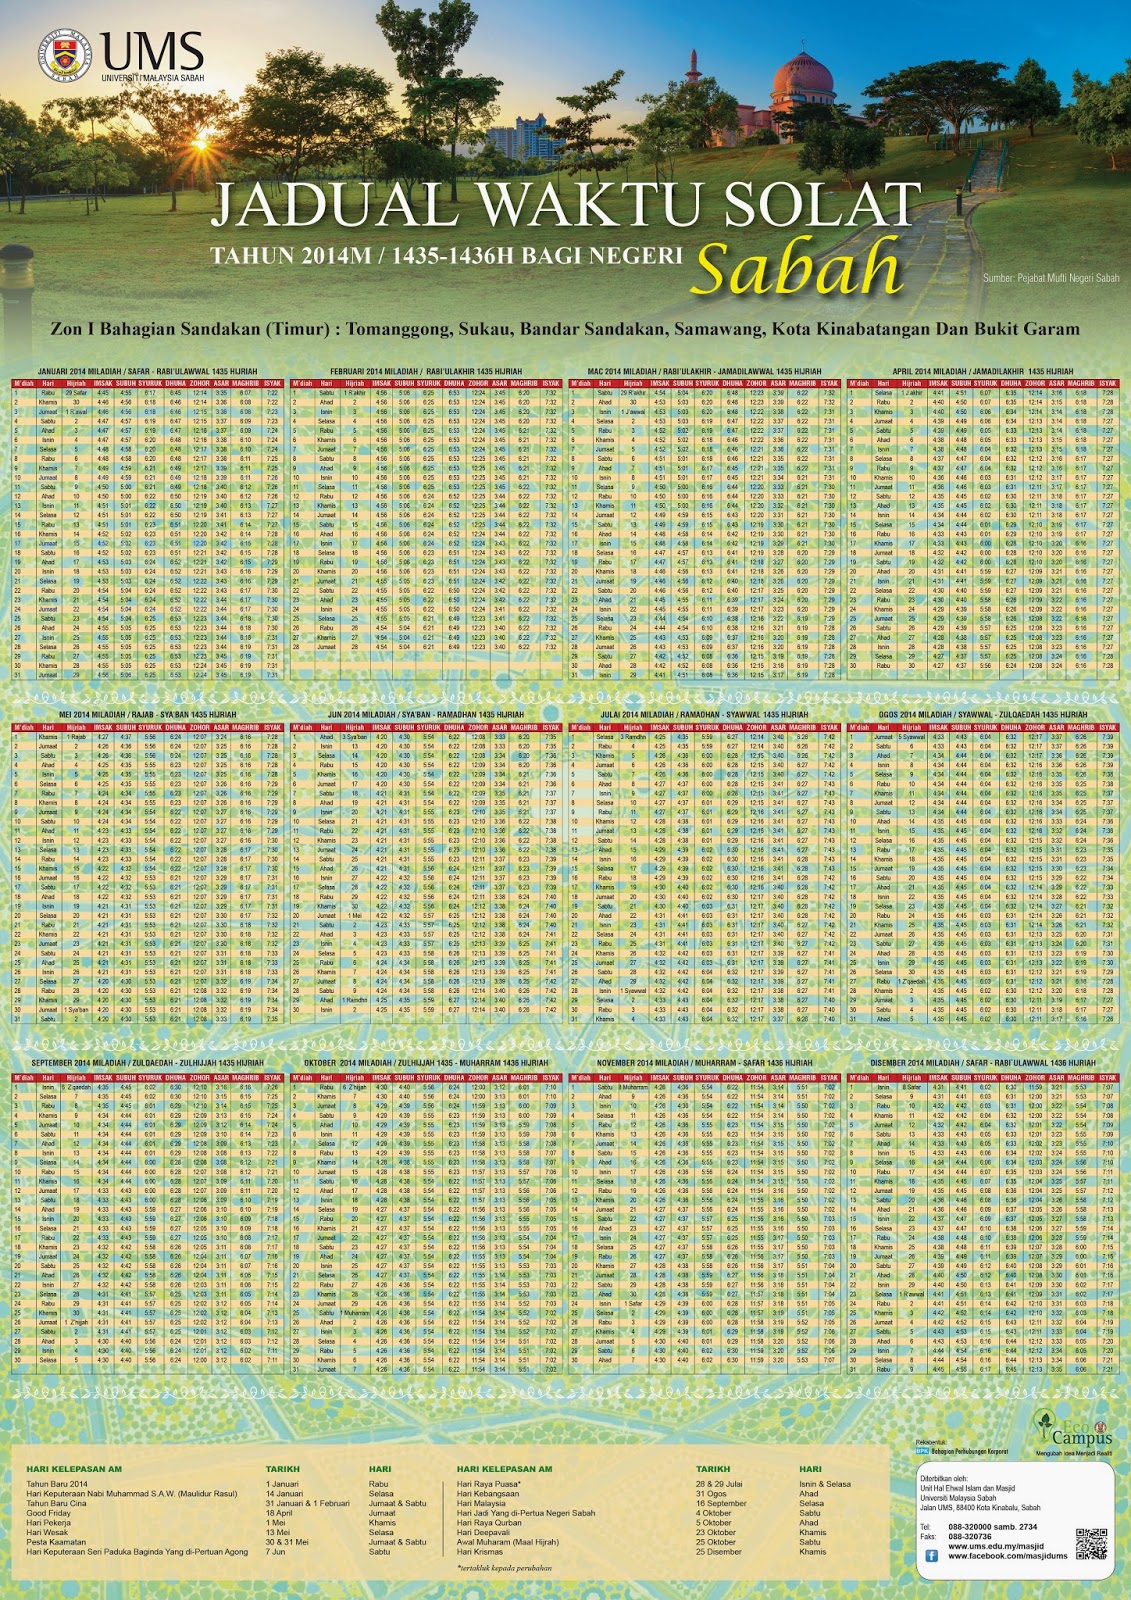 Jadual Waktu Solat Sabah - Penyusunan waktu solat fardhu telah